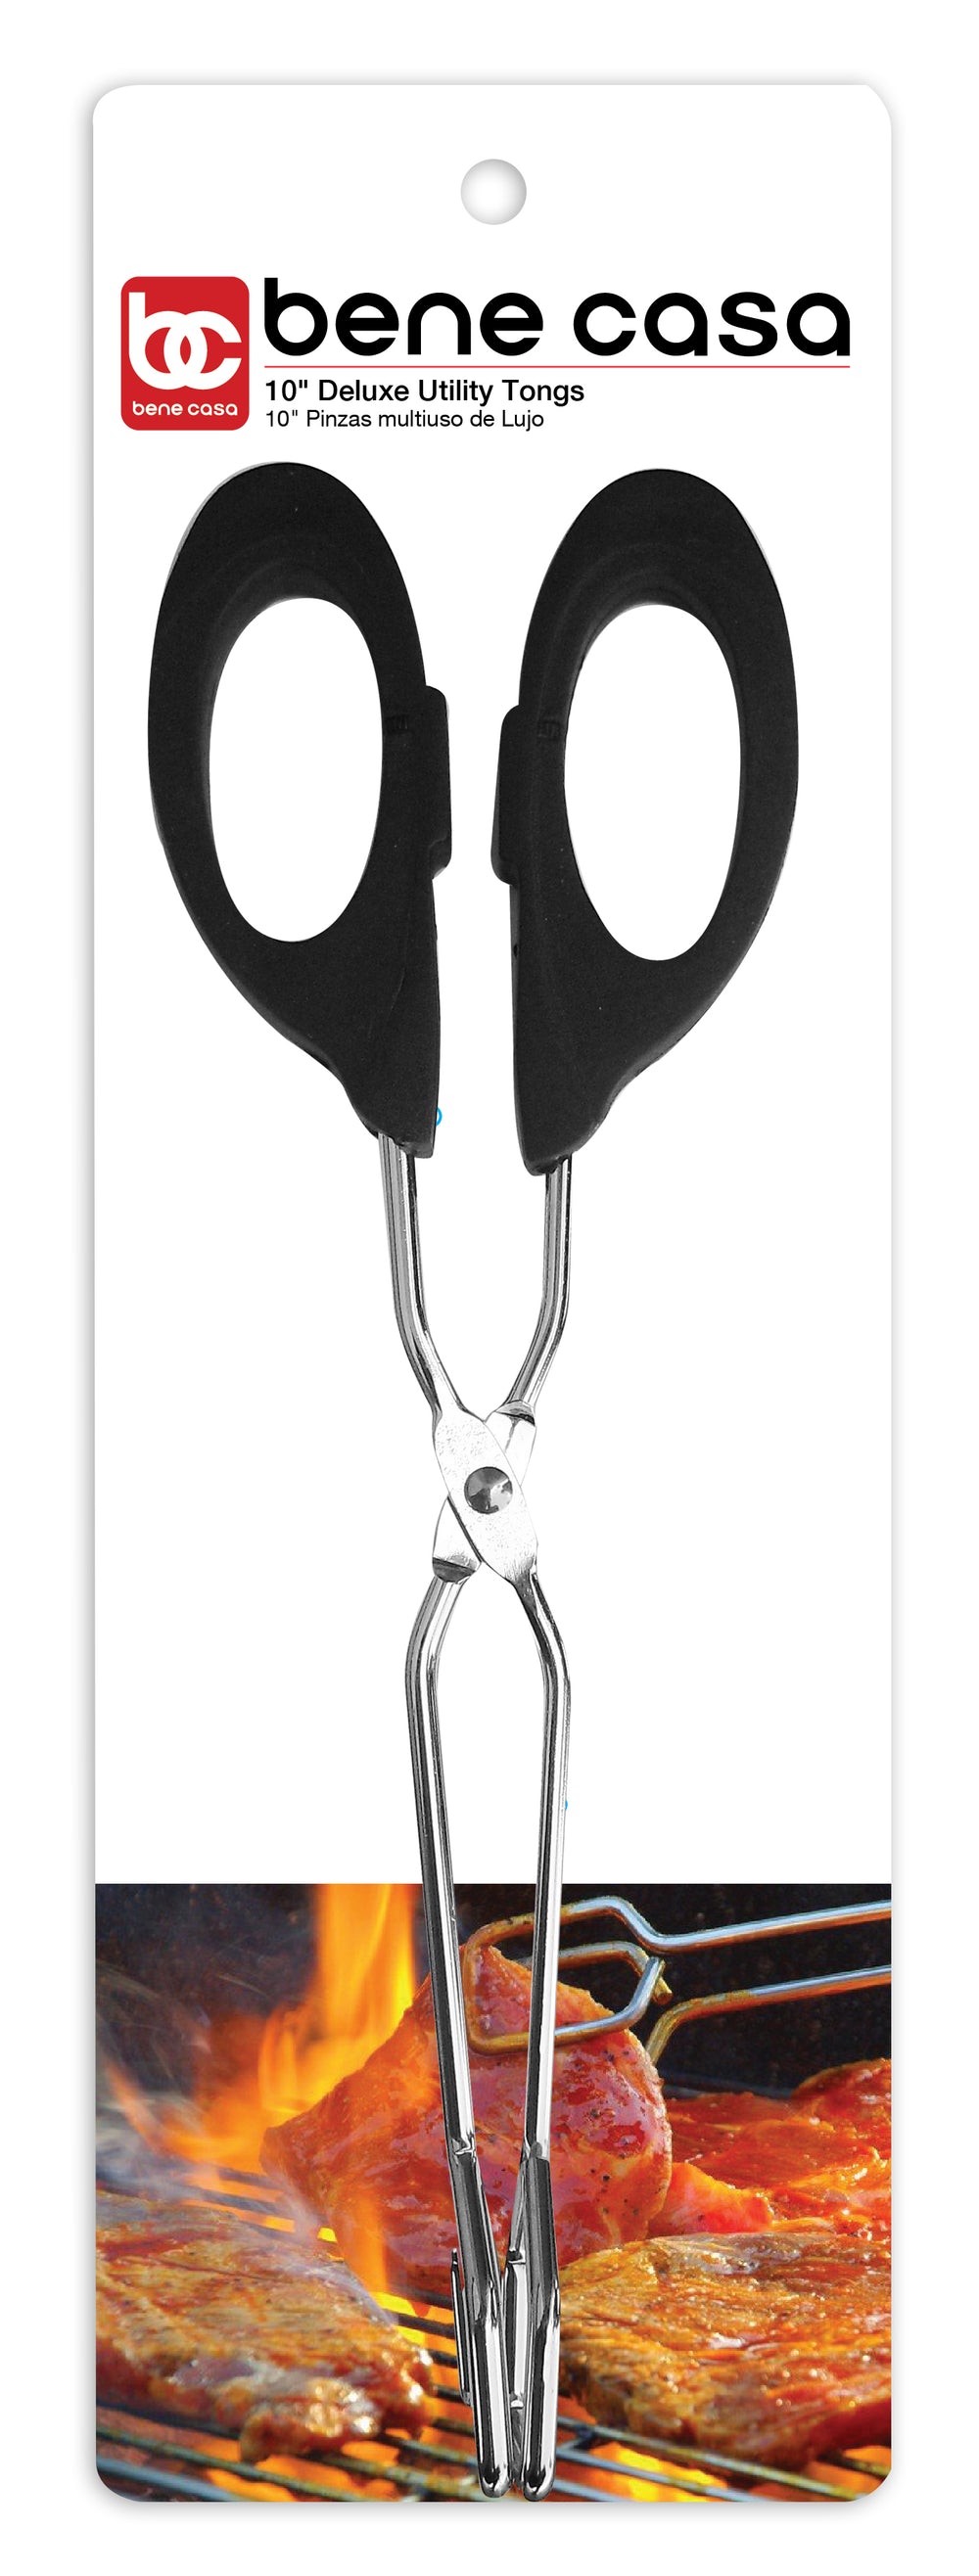 Bene Casa 10-inch metal tong, wide tip, heat-resistant handle, scissor design